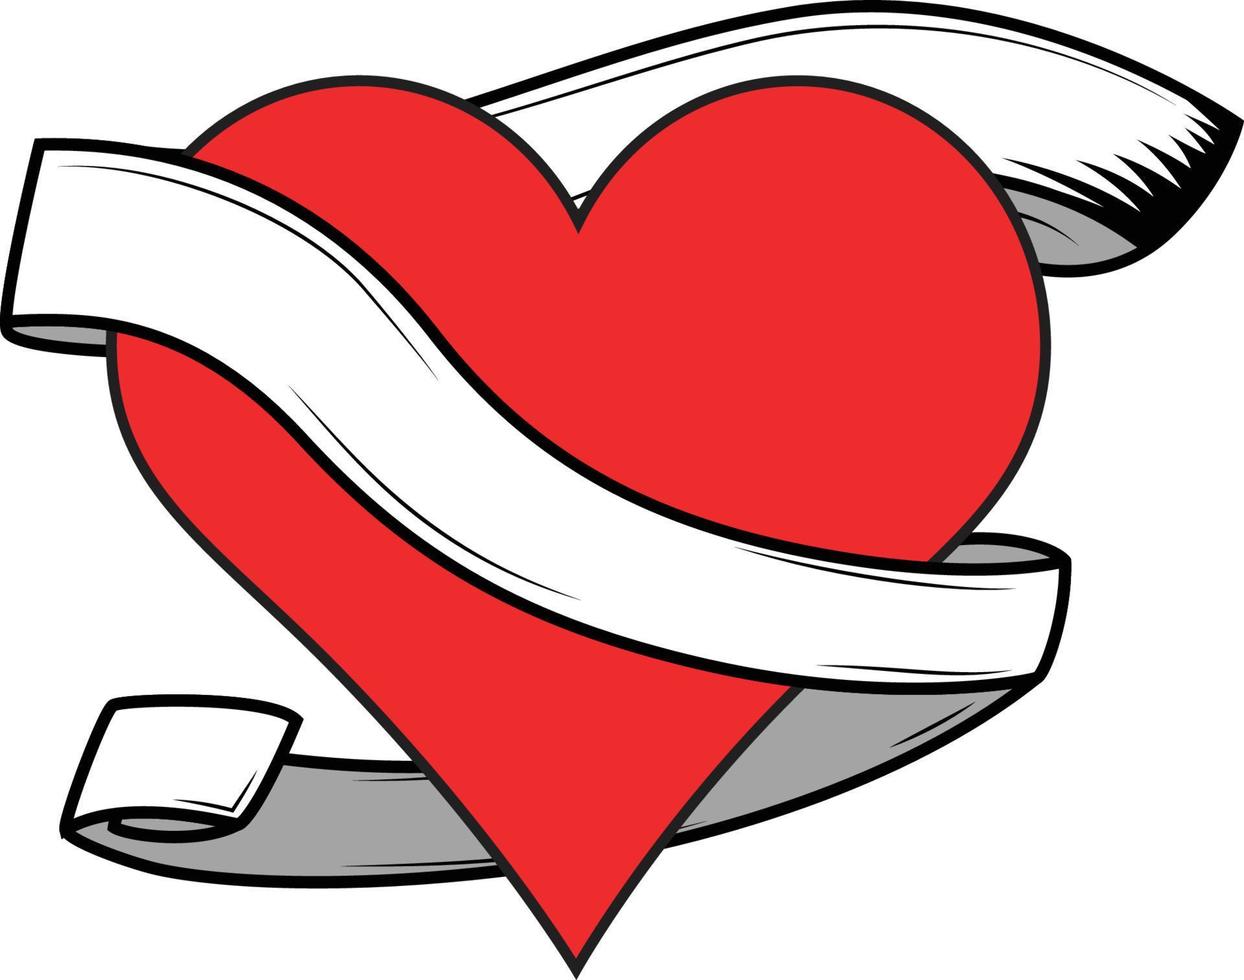 corazones, jugando tarjeta símbolo con un vacío bandera, Desplazarse alrededor él, logo modelo o diseño recursos vector ilustración